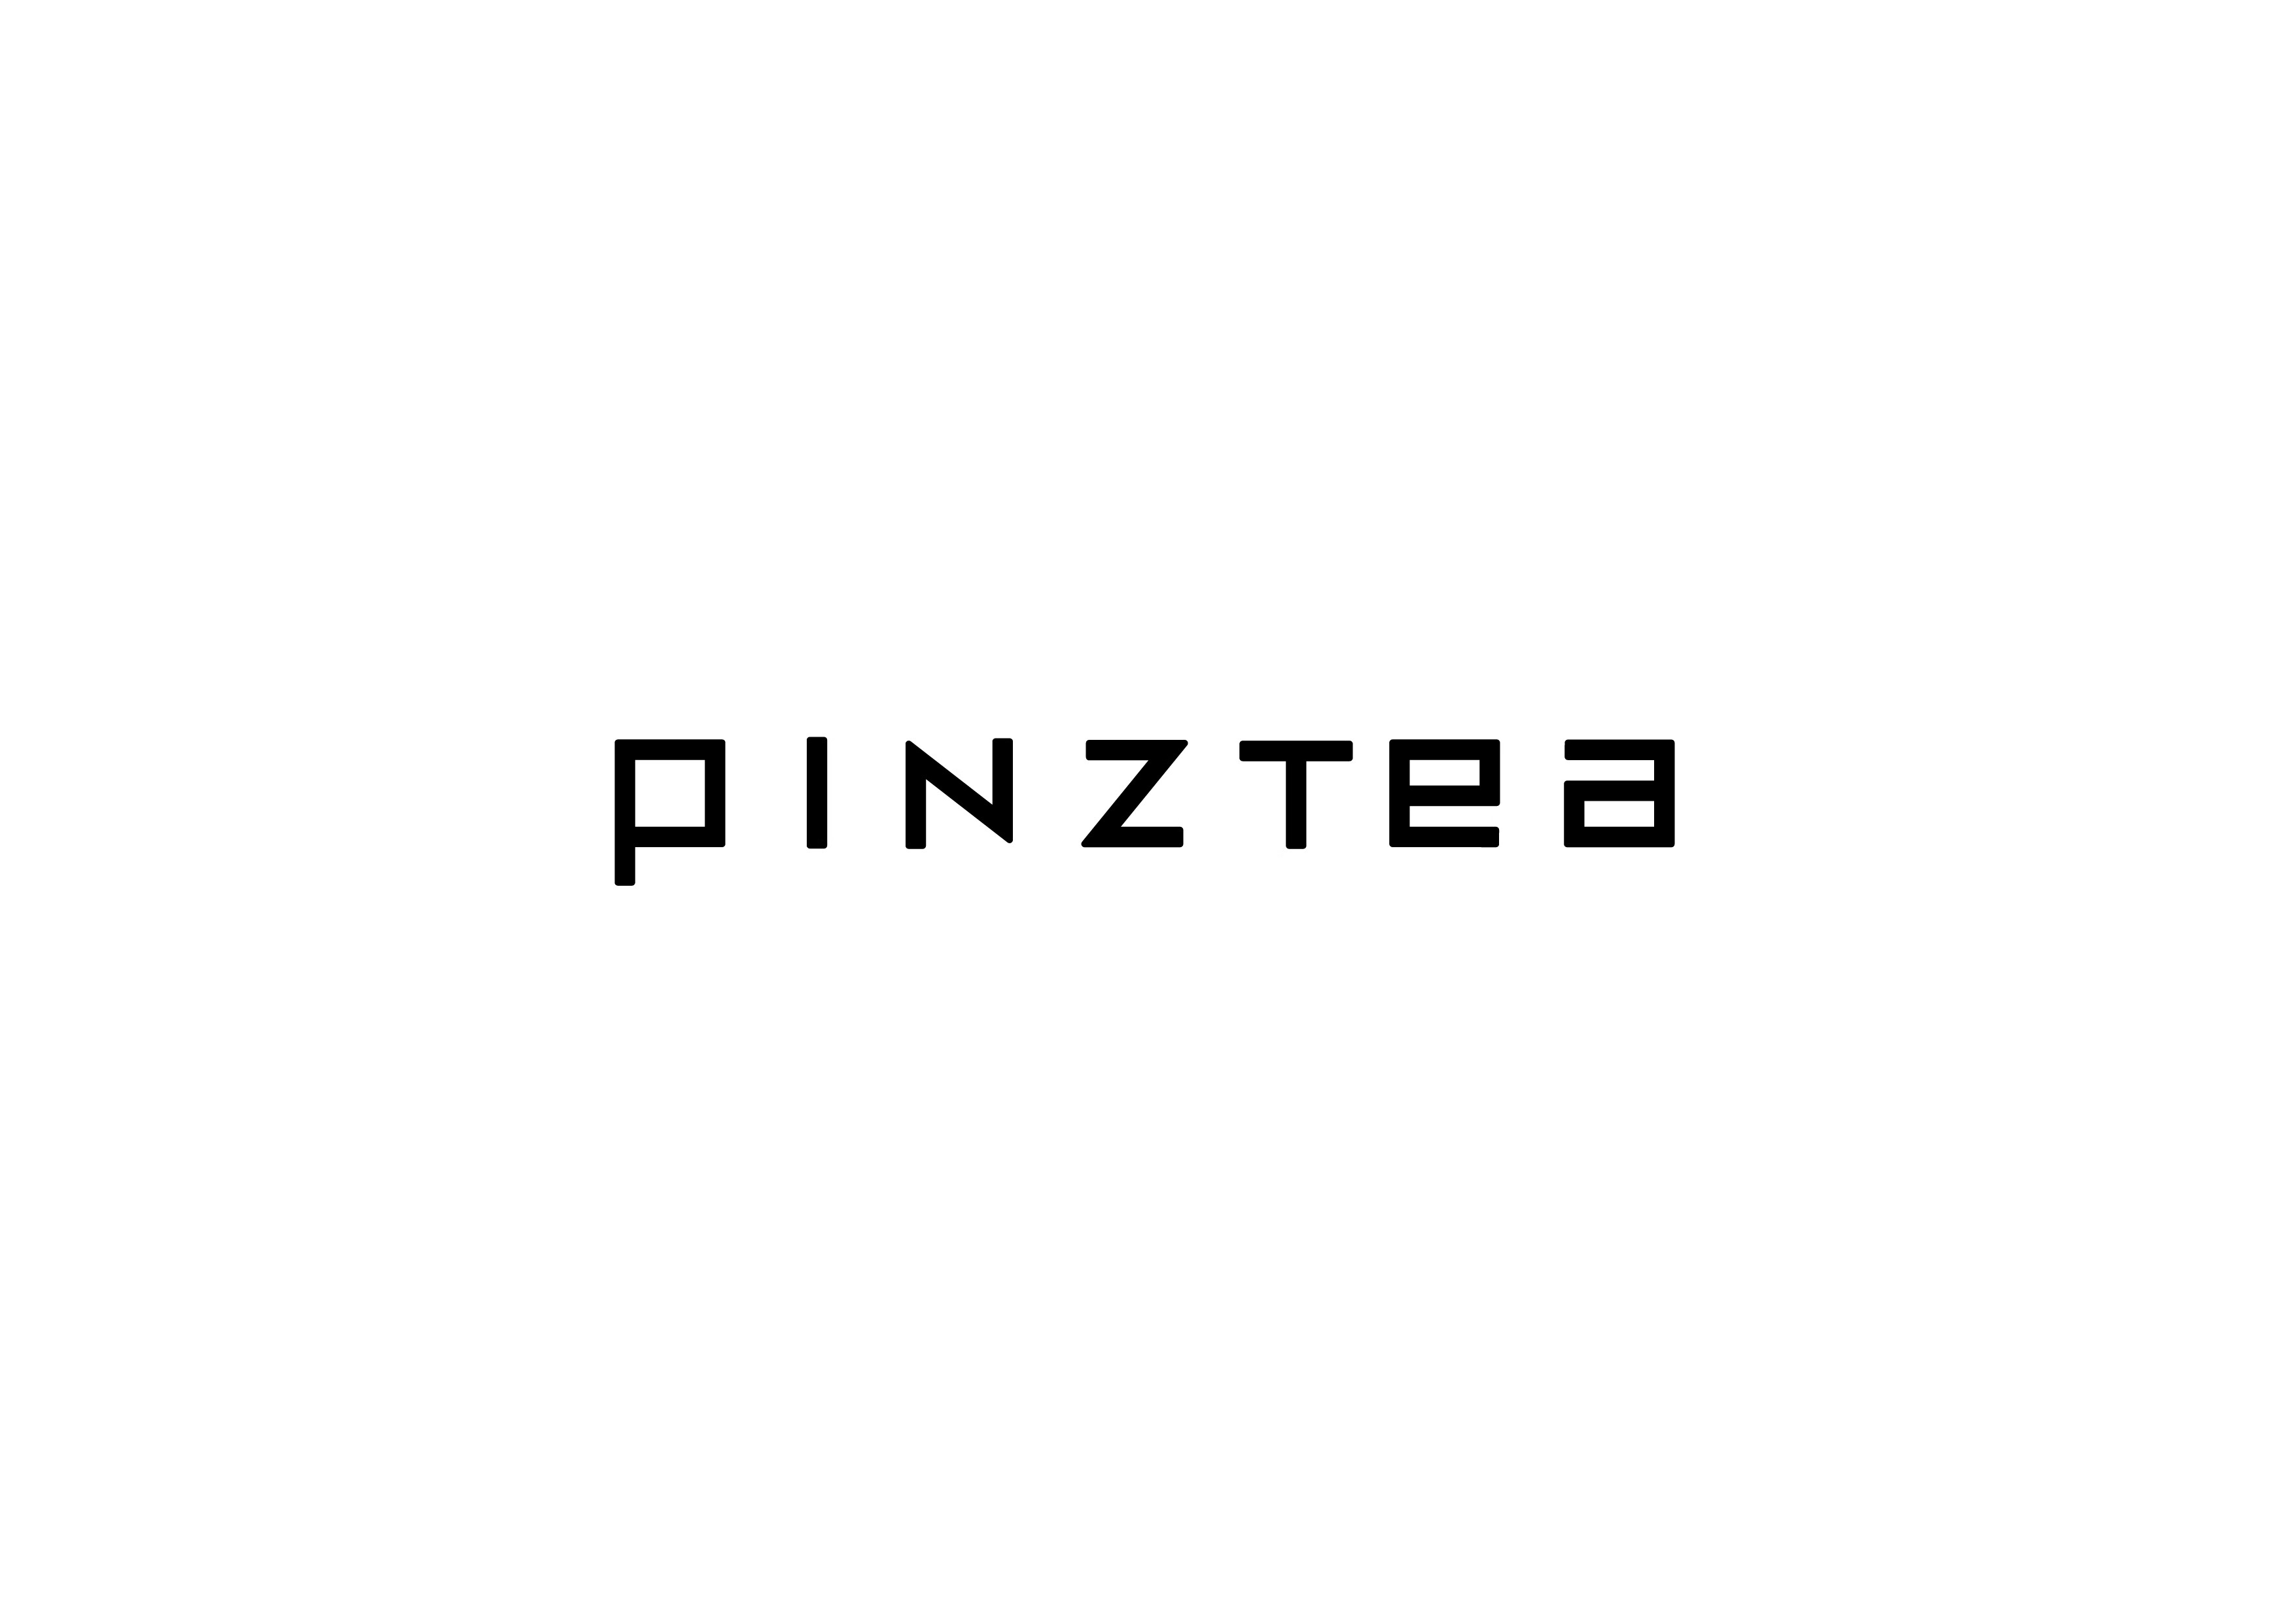 Pinztea